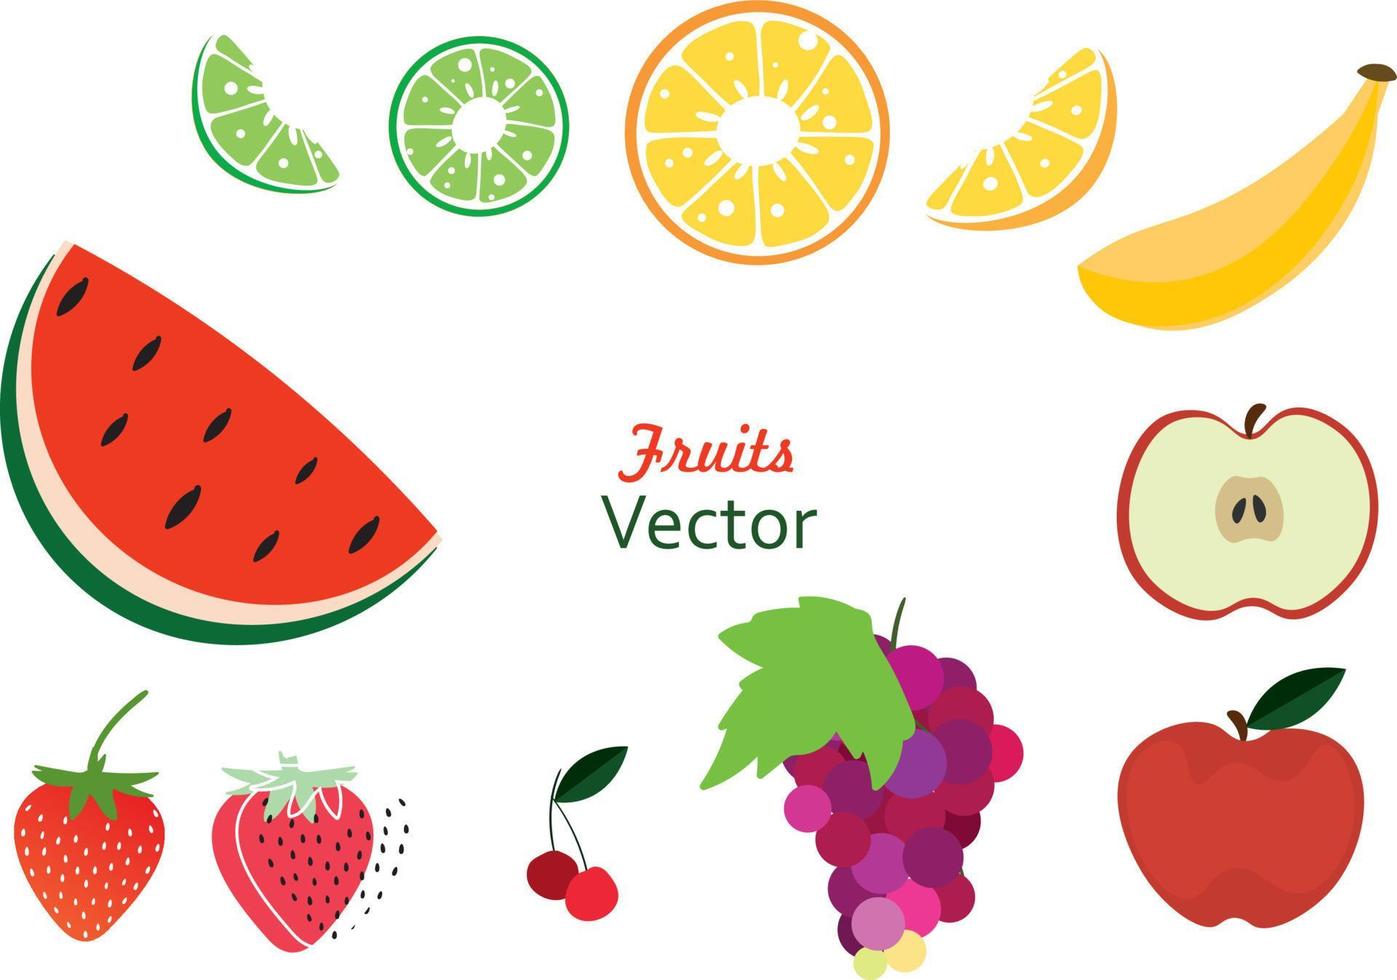 fruits de griffonnage. fruits tropicaux naturels, gribouillages agrumes orange et citron vitaminé vecteur